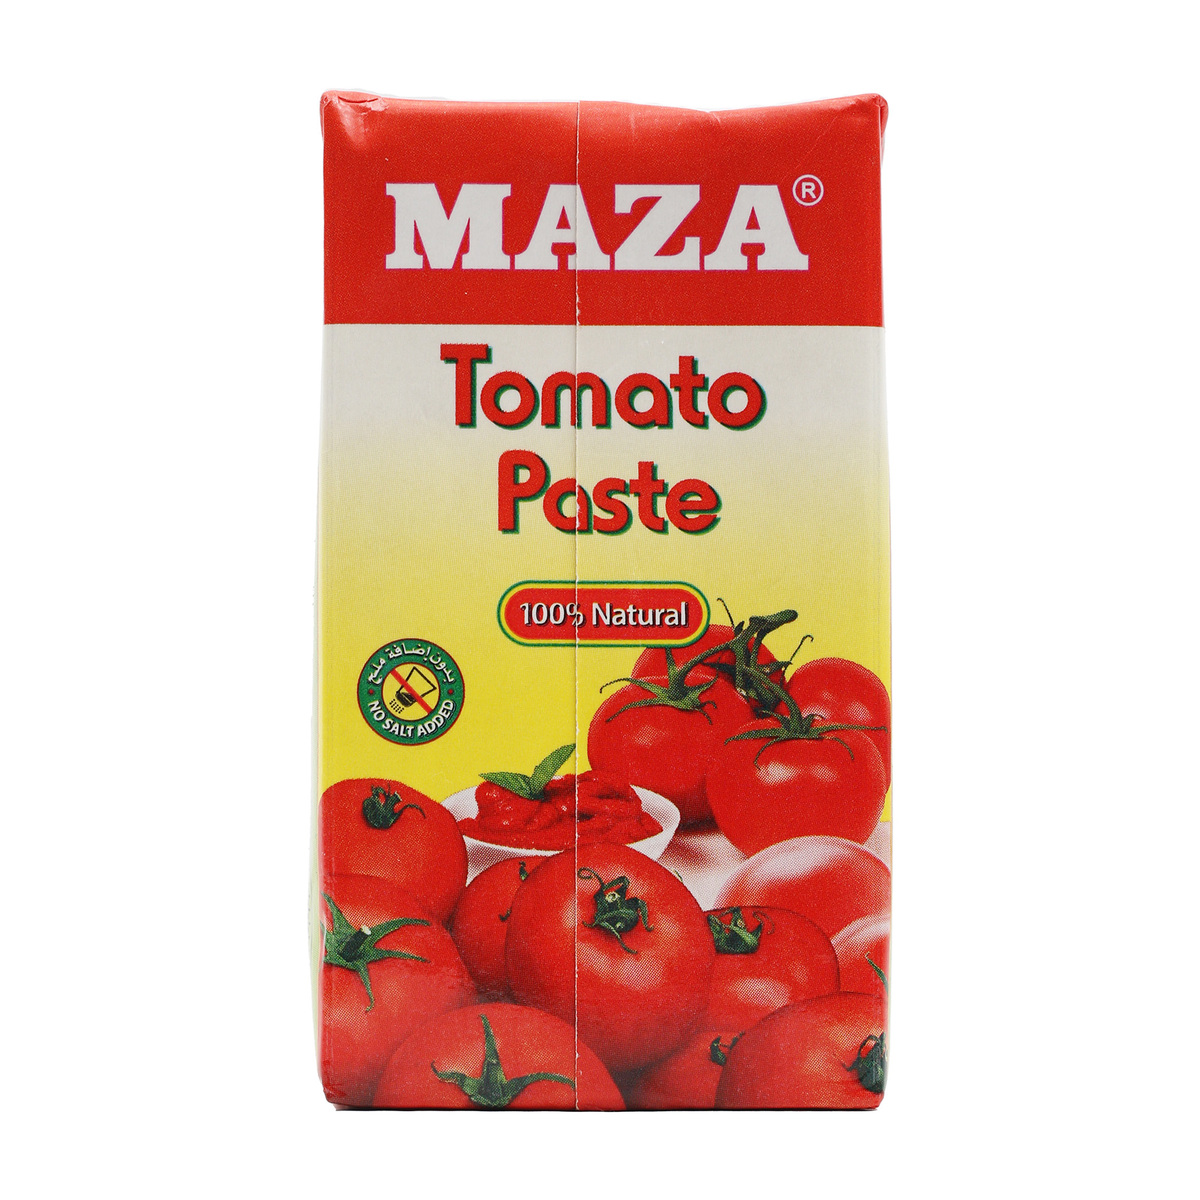 Maza Tomato Paste 8 x 135g